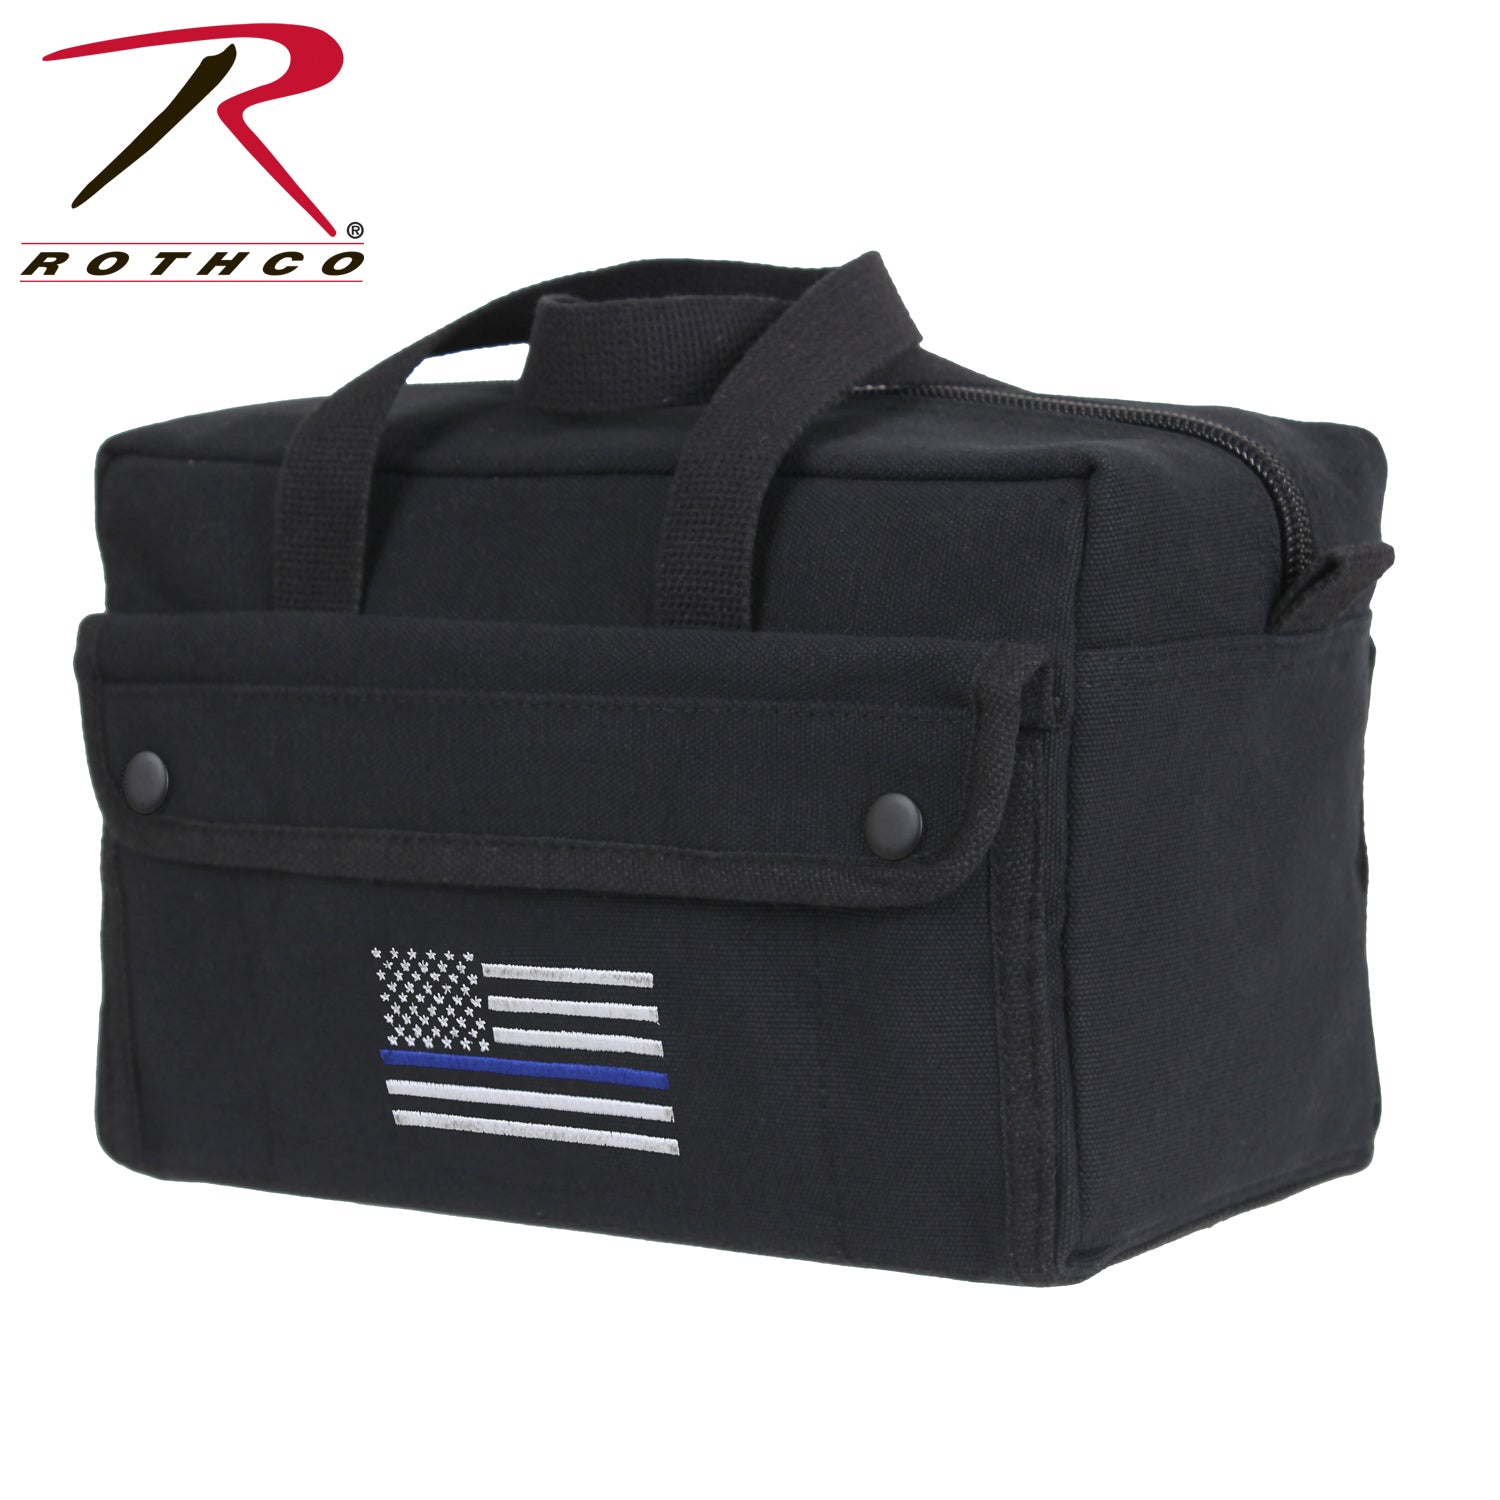 Rothco Thin Blue Line Mechanic Tool Bag